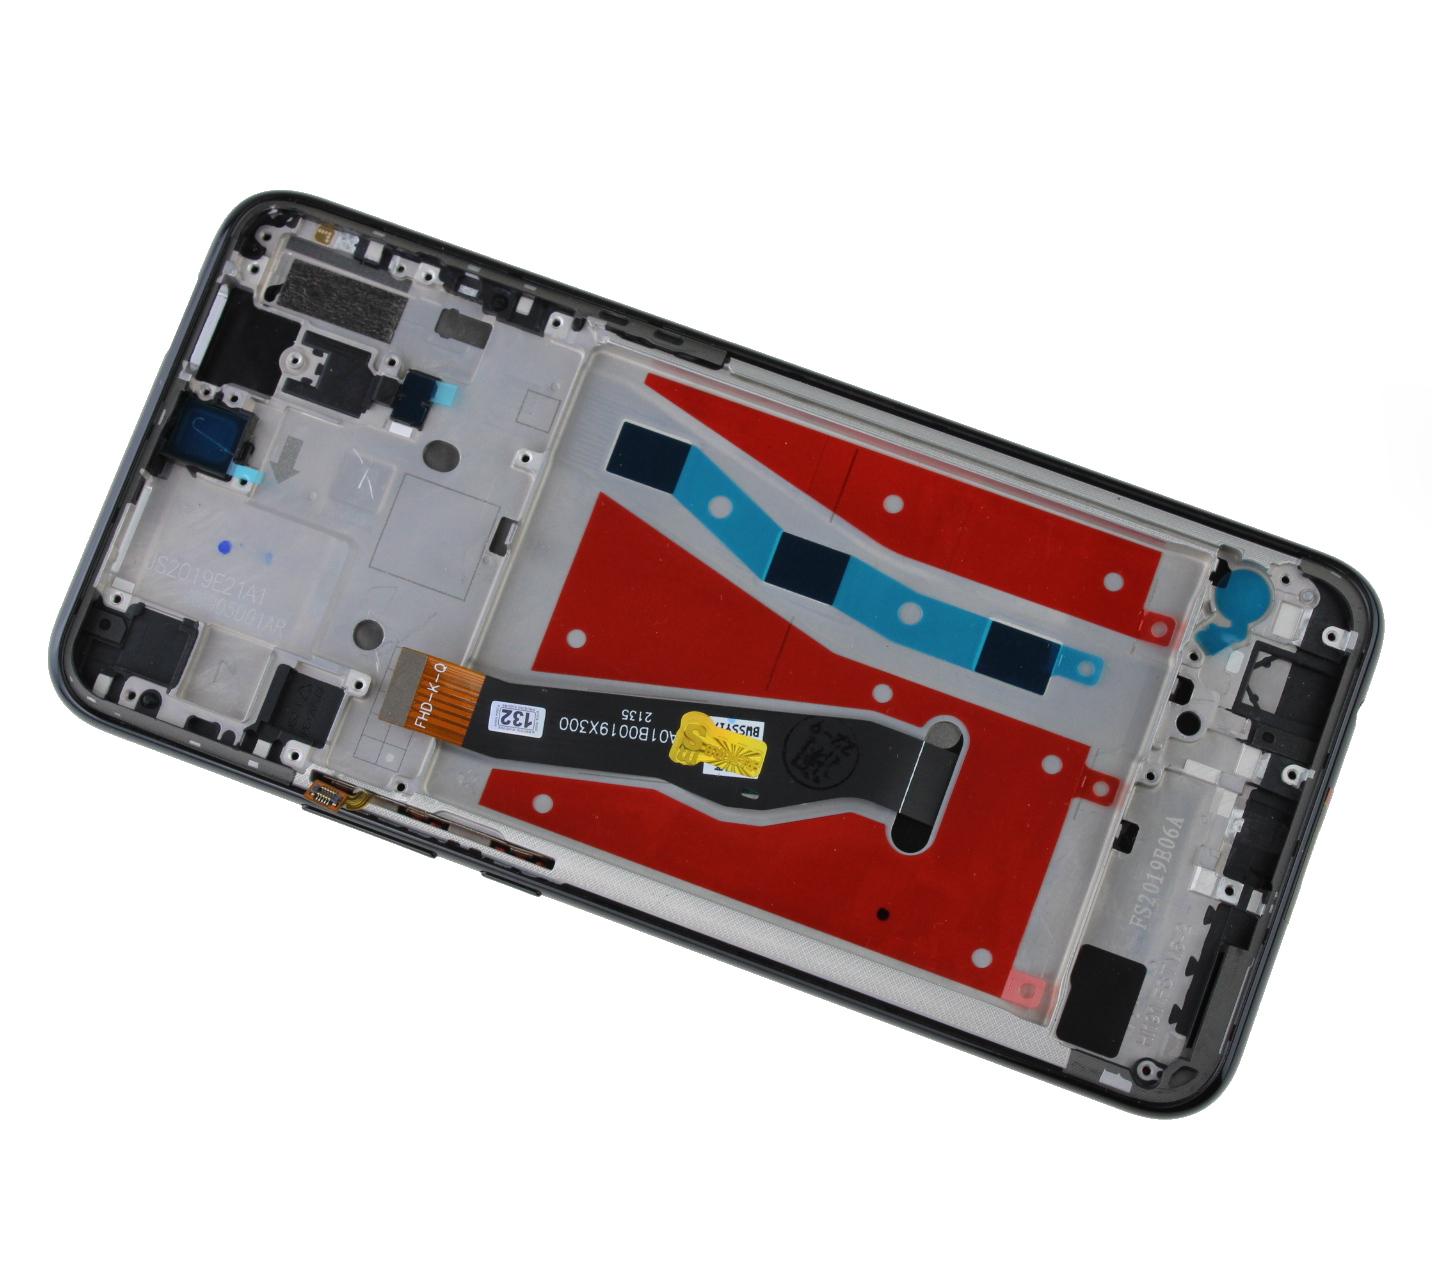 Originál LCD + Dotyková vrstva Huawei P Smart Z STK-LX1 černá repasovaný díl - vyměněné sklíčko